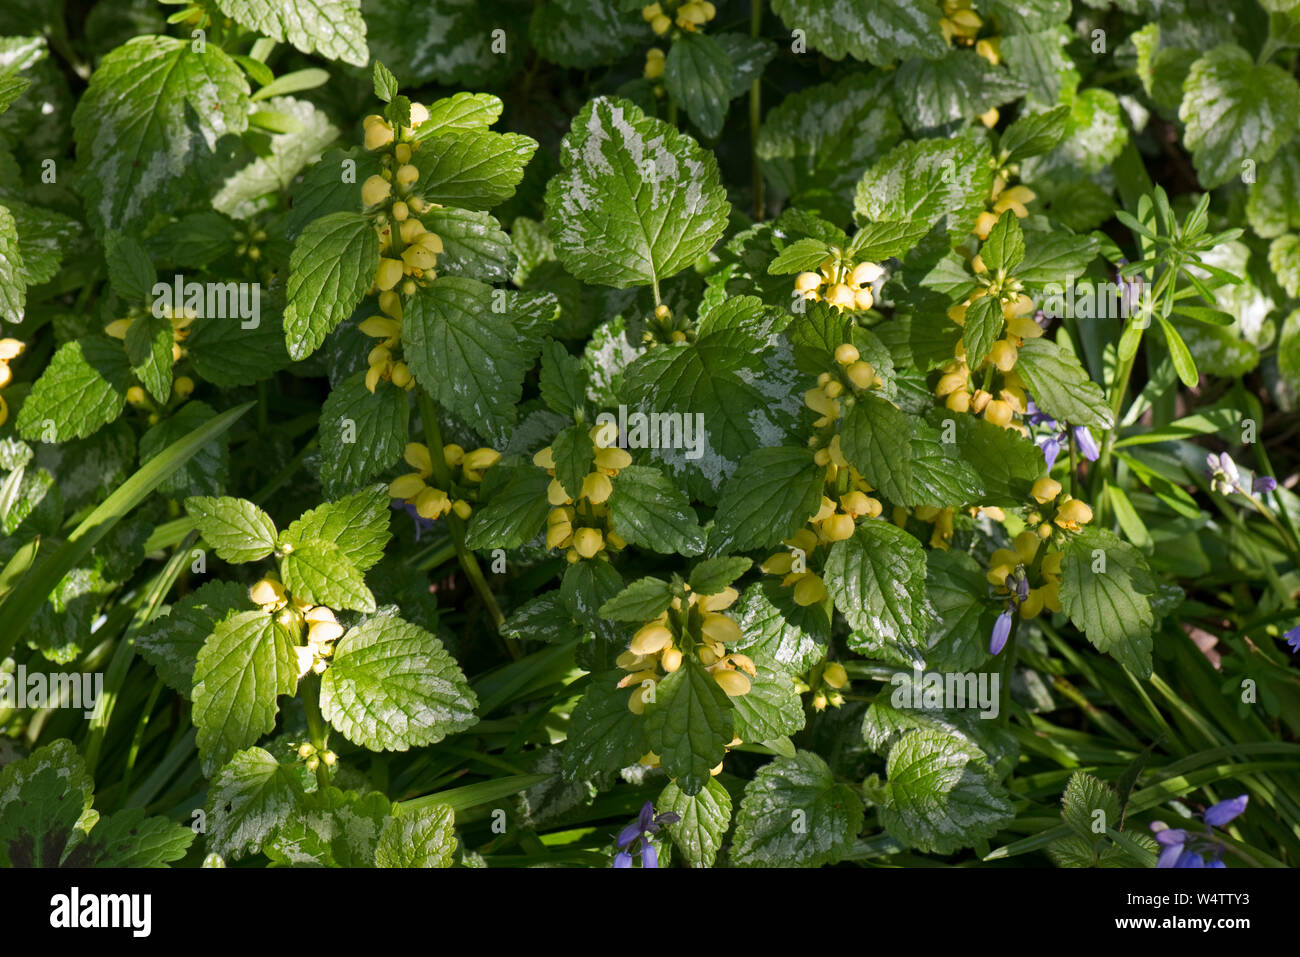 Archange jaune panachée (Lamiastrum galeobdolon ssp. argentatum 'Variegatum') plantes envahissantes non indigènes de plantes de jardin. Banque D'Images